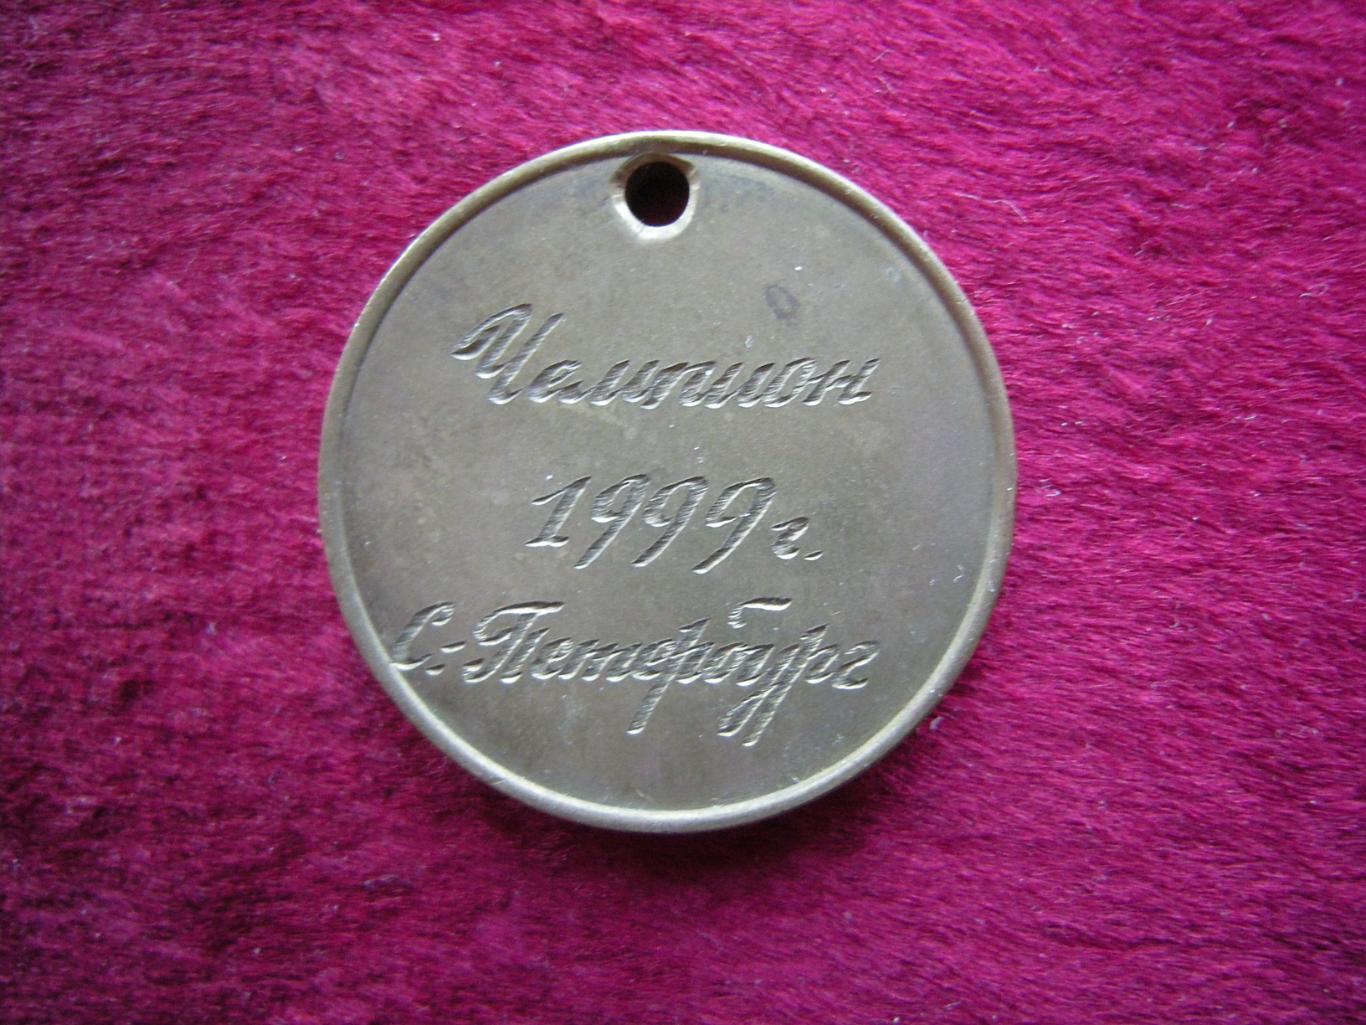 Медаль Чемпион 1999г. С-Петербург, завод Электросила 1